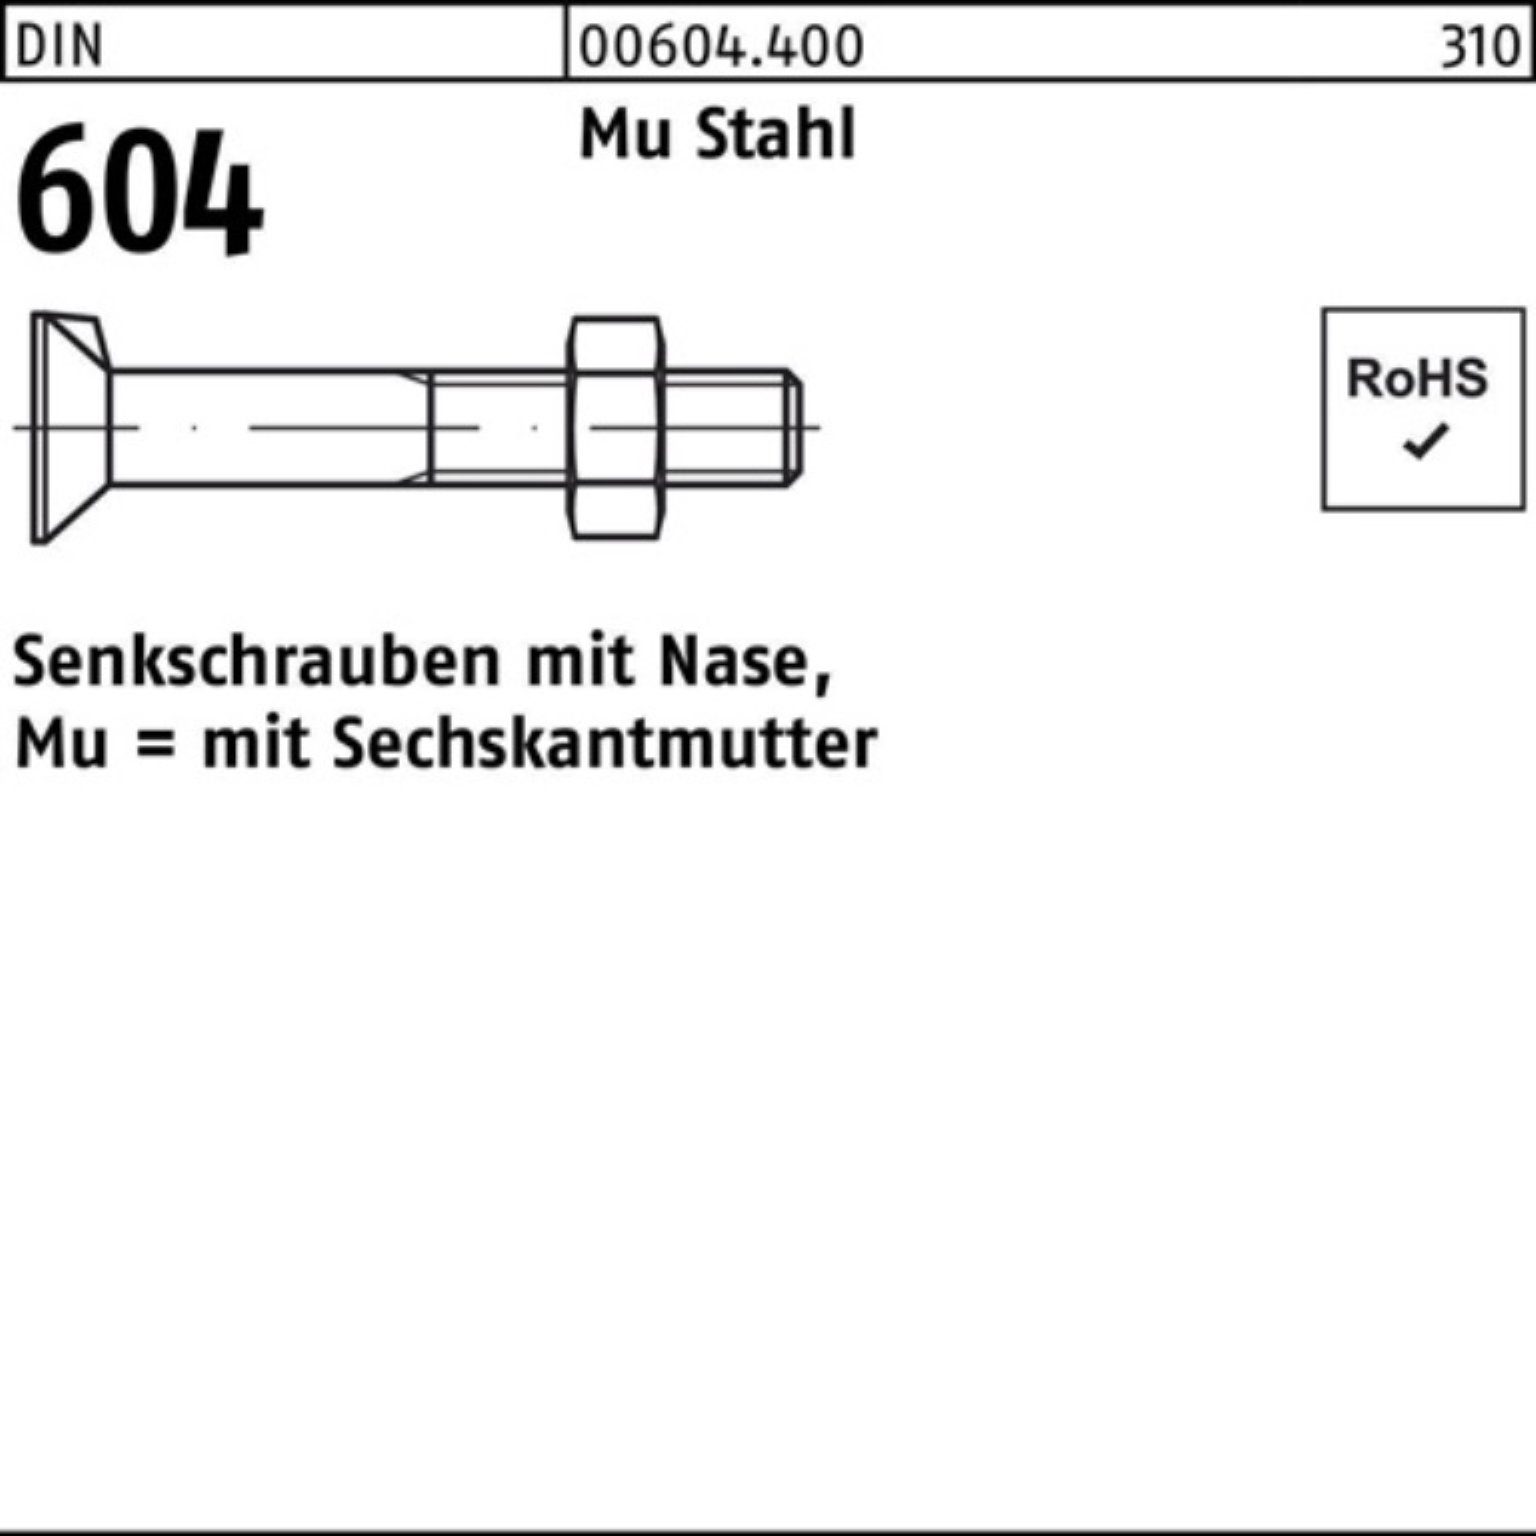 Reyher Senkschraube 100er Pack Senkschraube DIN 4.6 M20x Mu 604 Stahl Nase/6-ktmutter 130